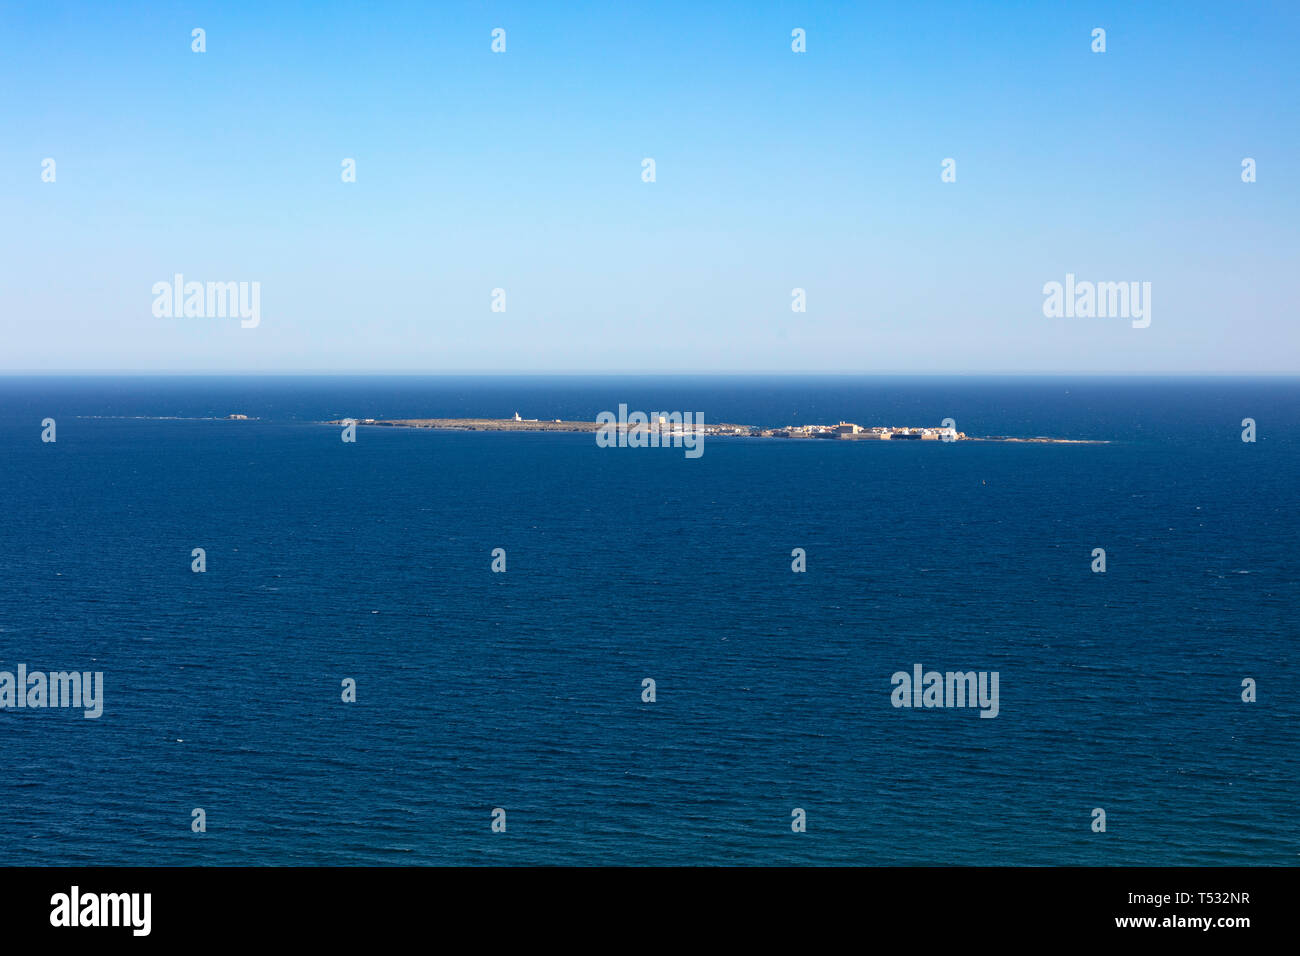 Vista panorámica de la isla de Tabarca desde el faro de Santa Pola, en Alicante, España, en un intenso azul del mar Mediterráneo y el cielo claro Foto de stock